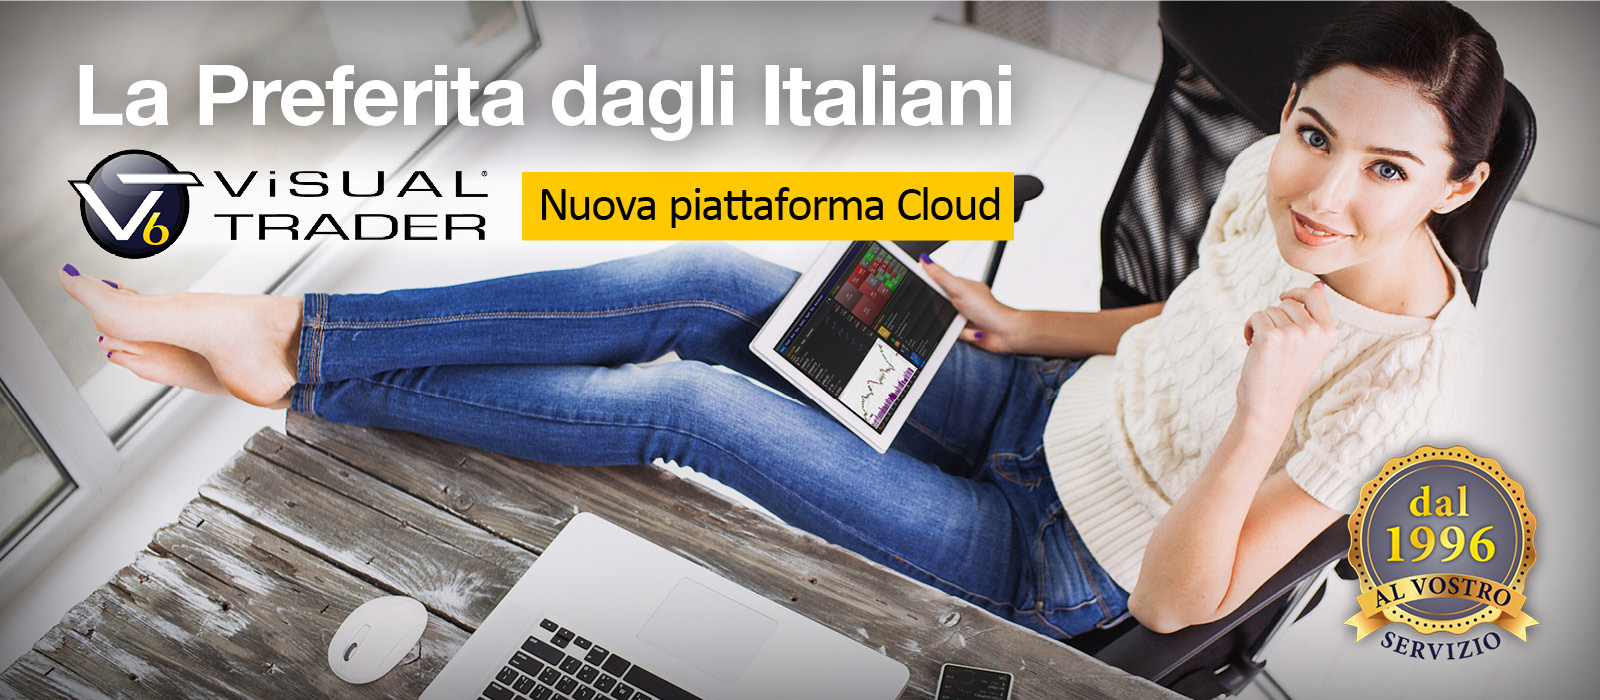 La nuova piattoforma Cloud - La preferita dagli italiani